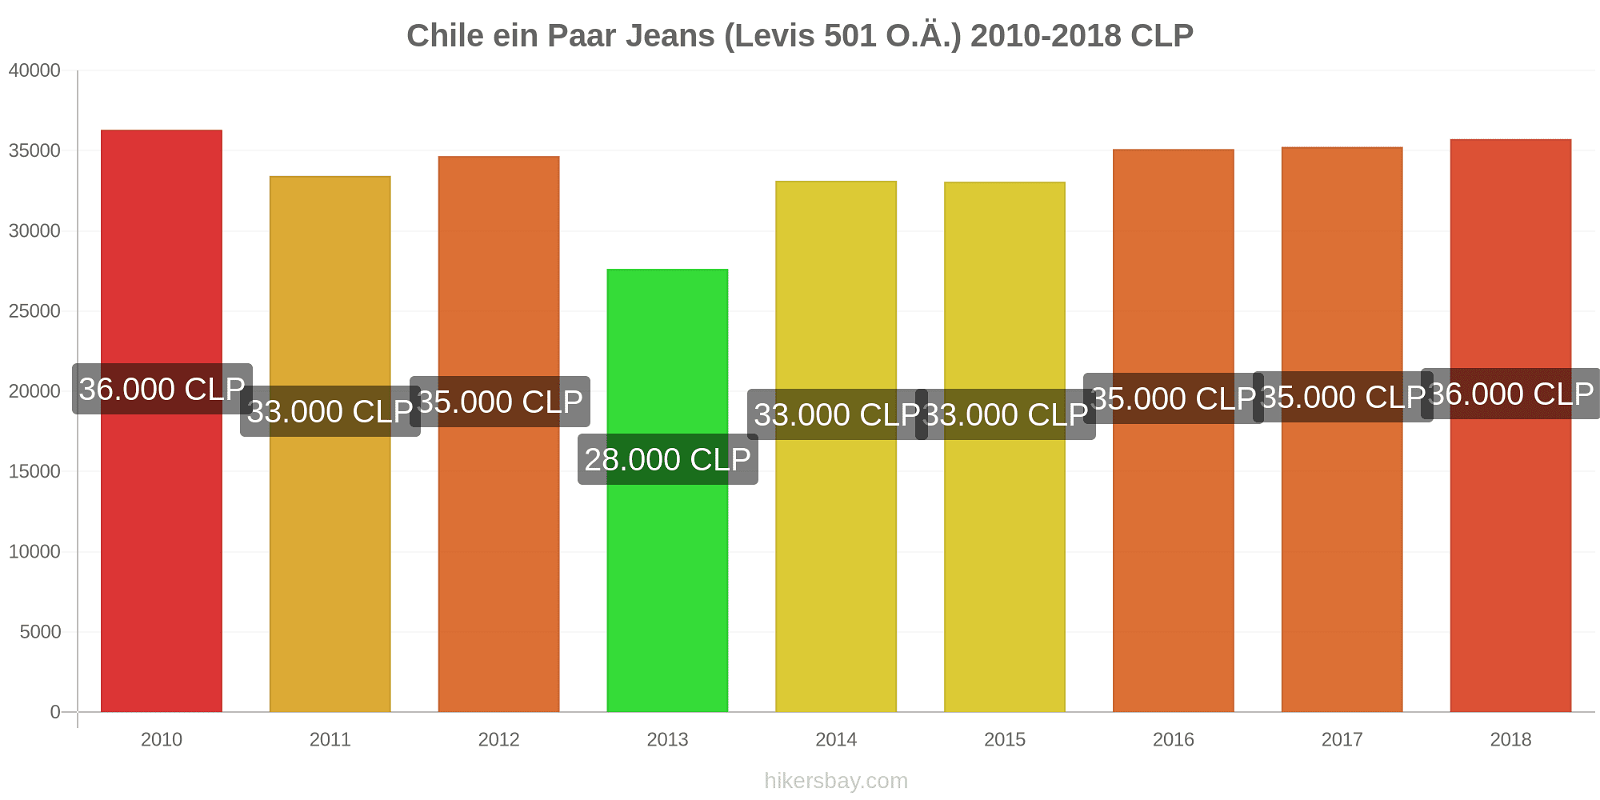 Chile Preisänderungen 1 Paar Jeans (Levis 501 oder ähnlich) hikersbay.com